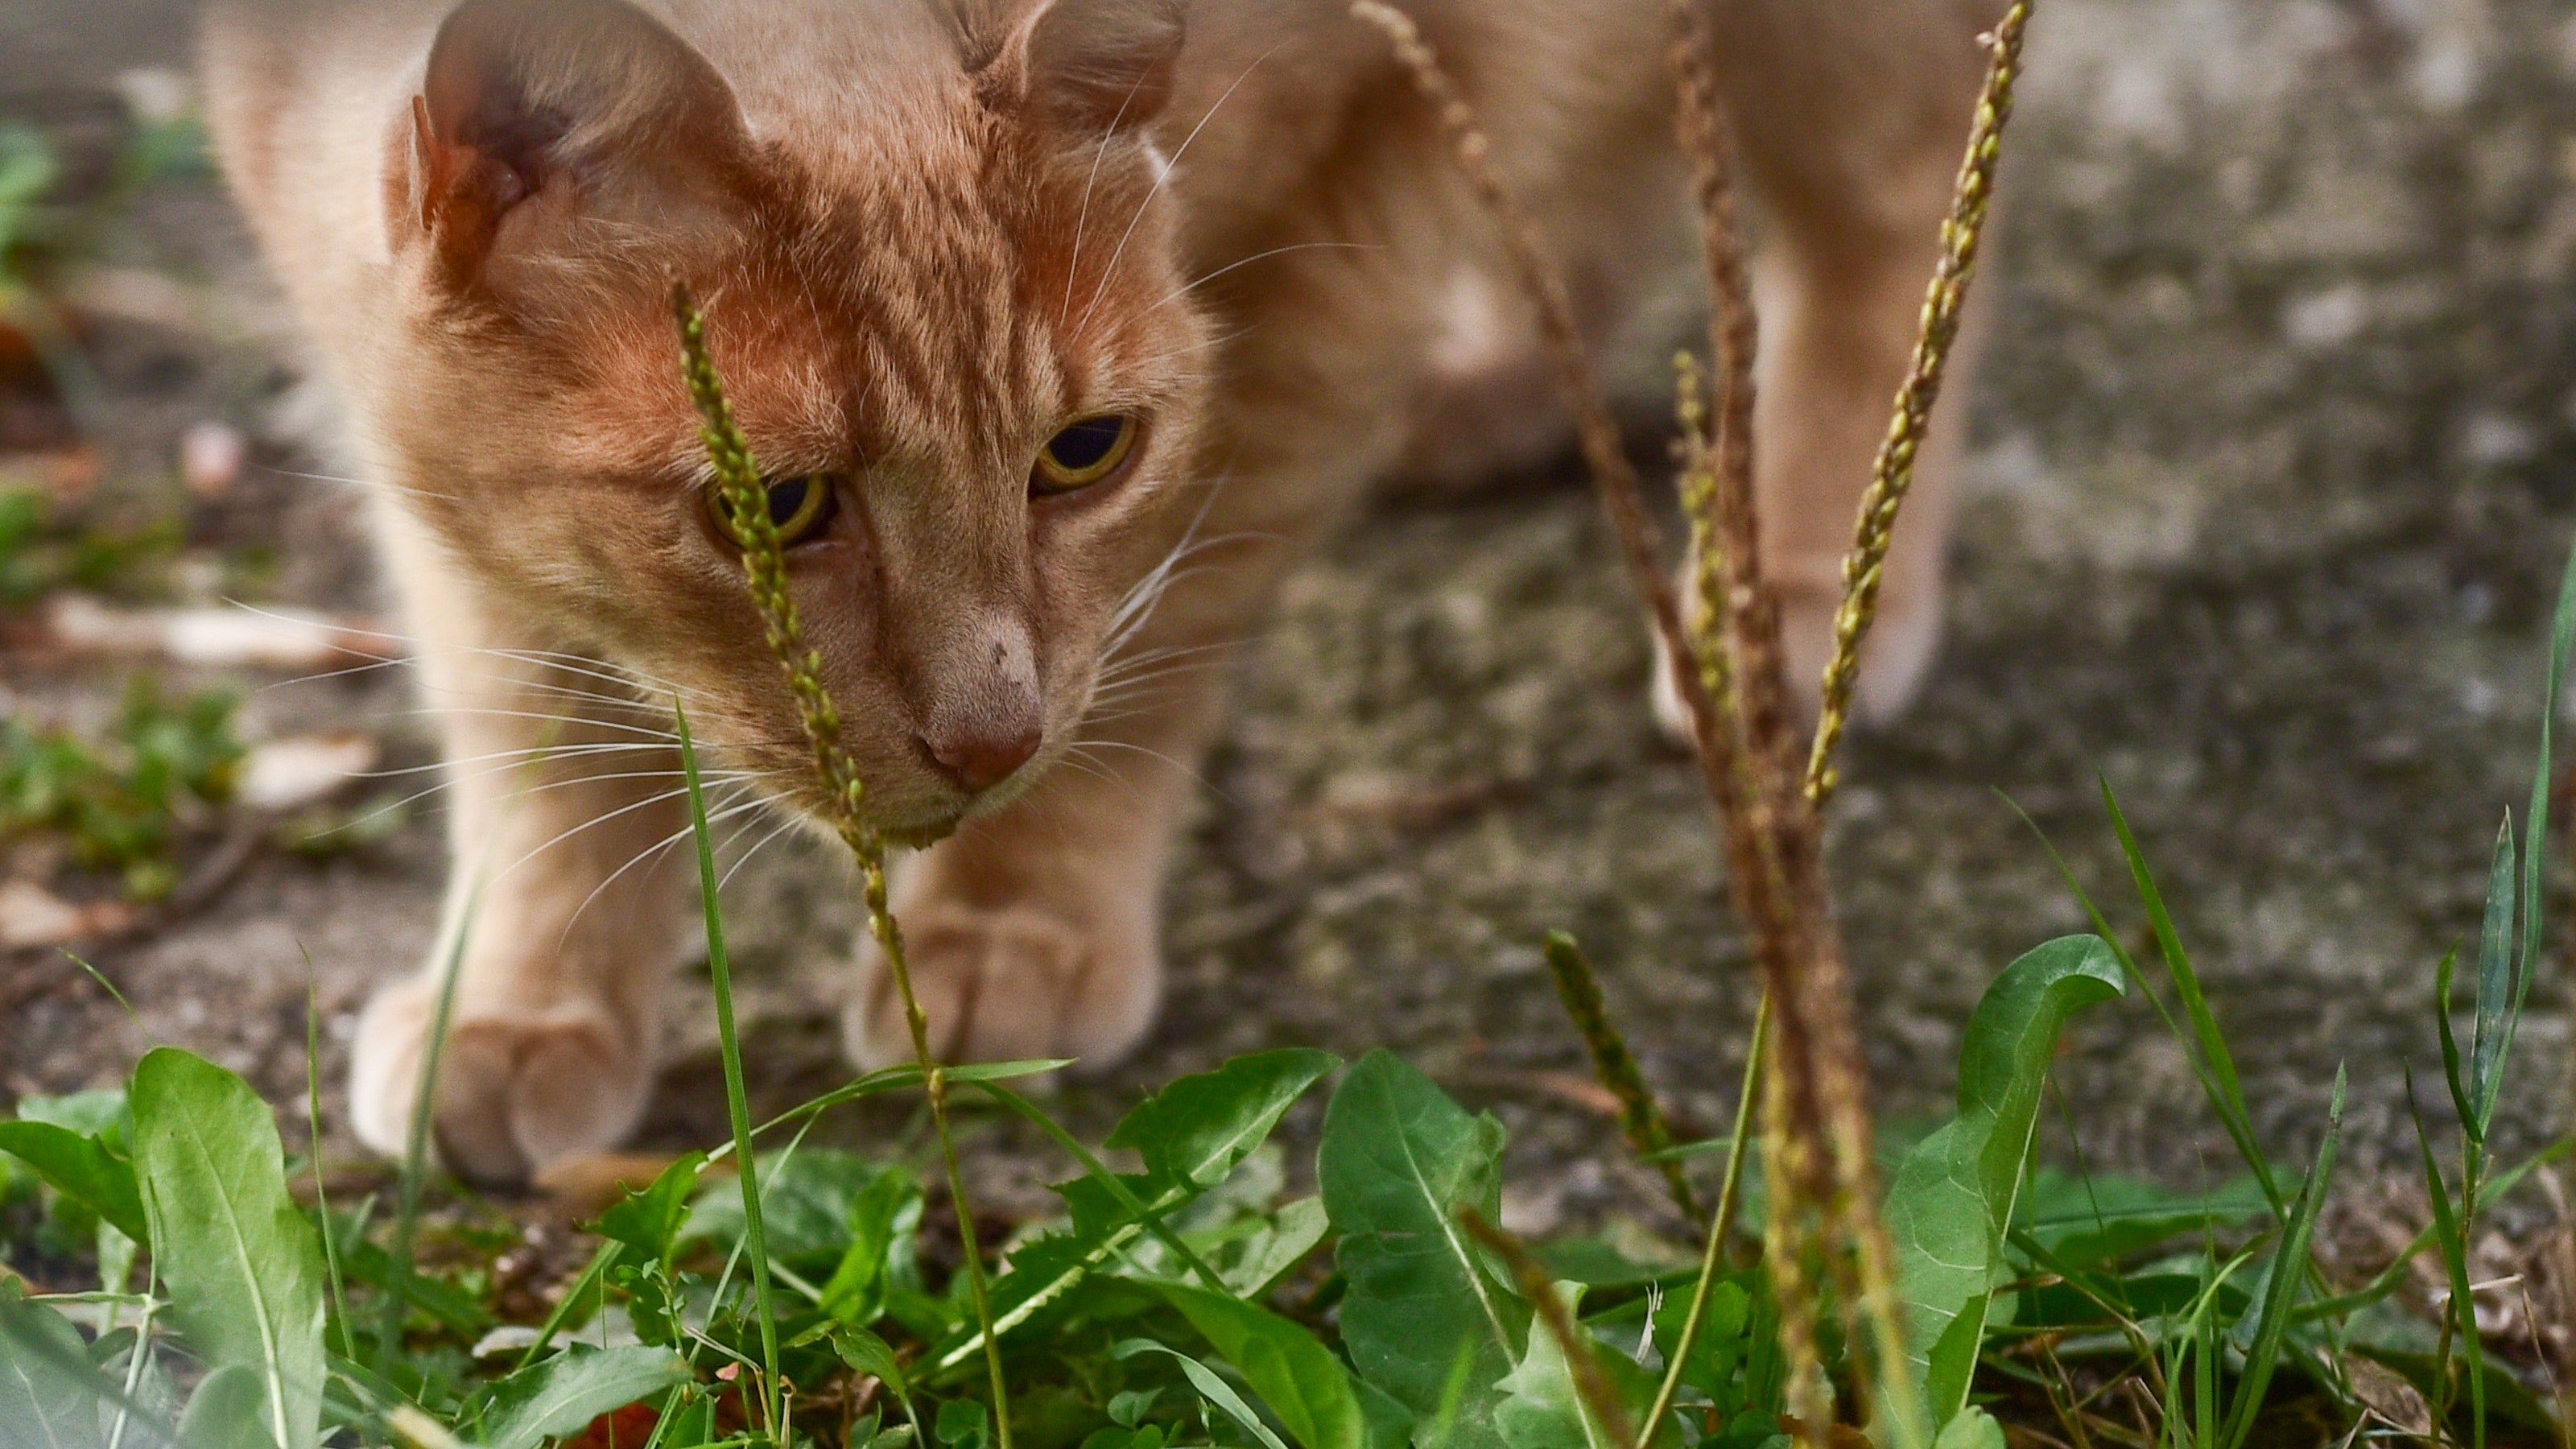 Orangene Katze läuft durch die Natur zwischen Pflanzen und Grass.